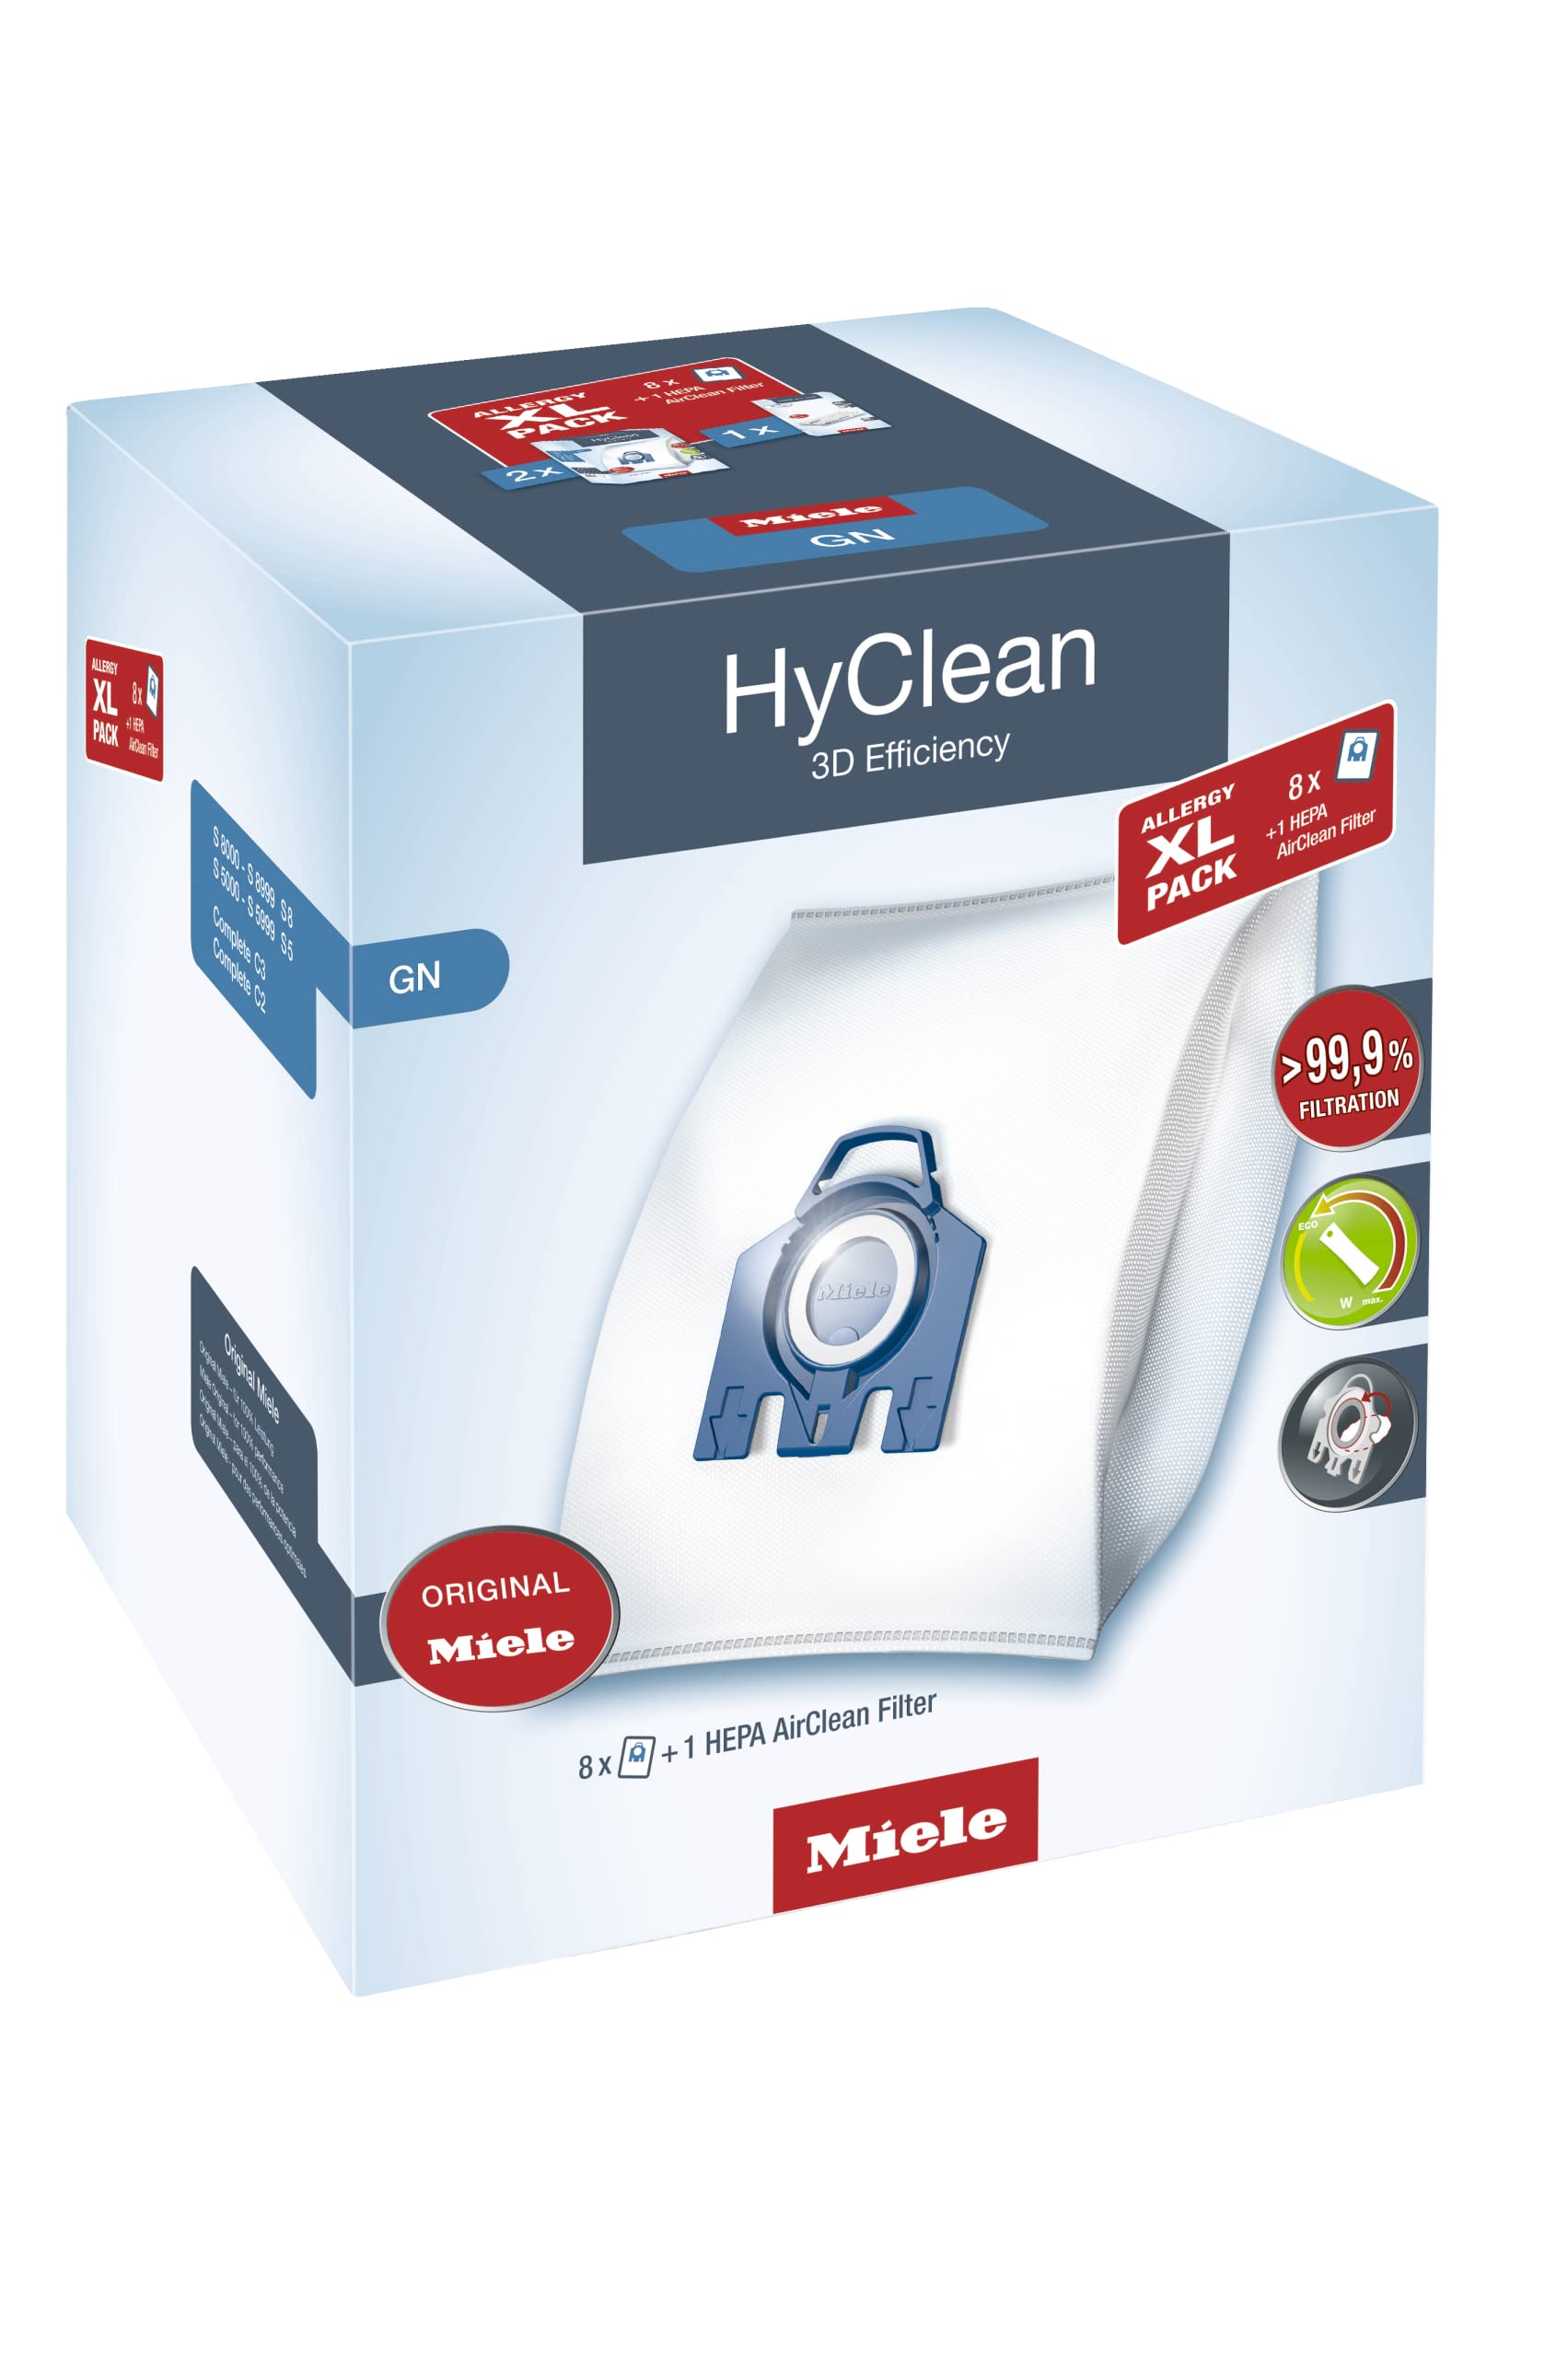 Miele XL Pack - 8x Miele Hyclean 3D GN Vacuum Bags 1 Miele Hepa Filter SF-HA 50